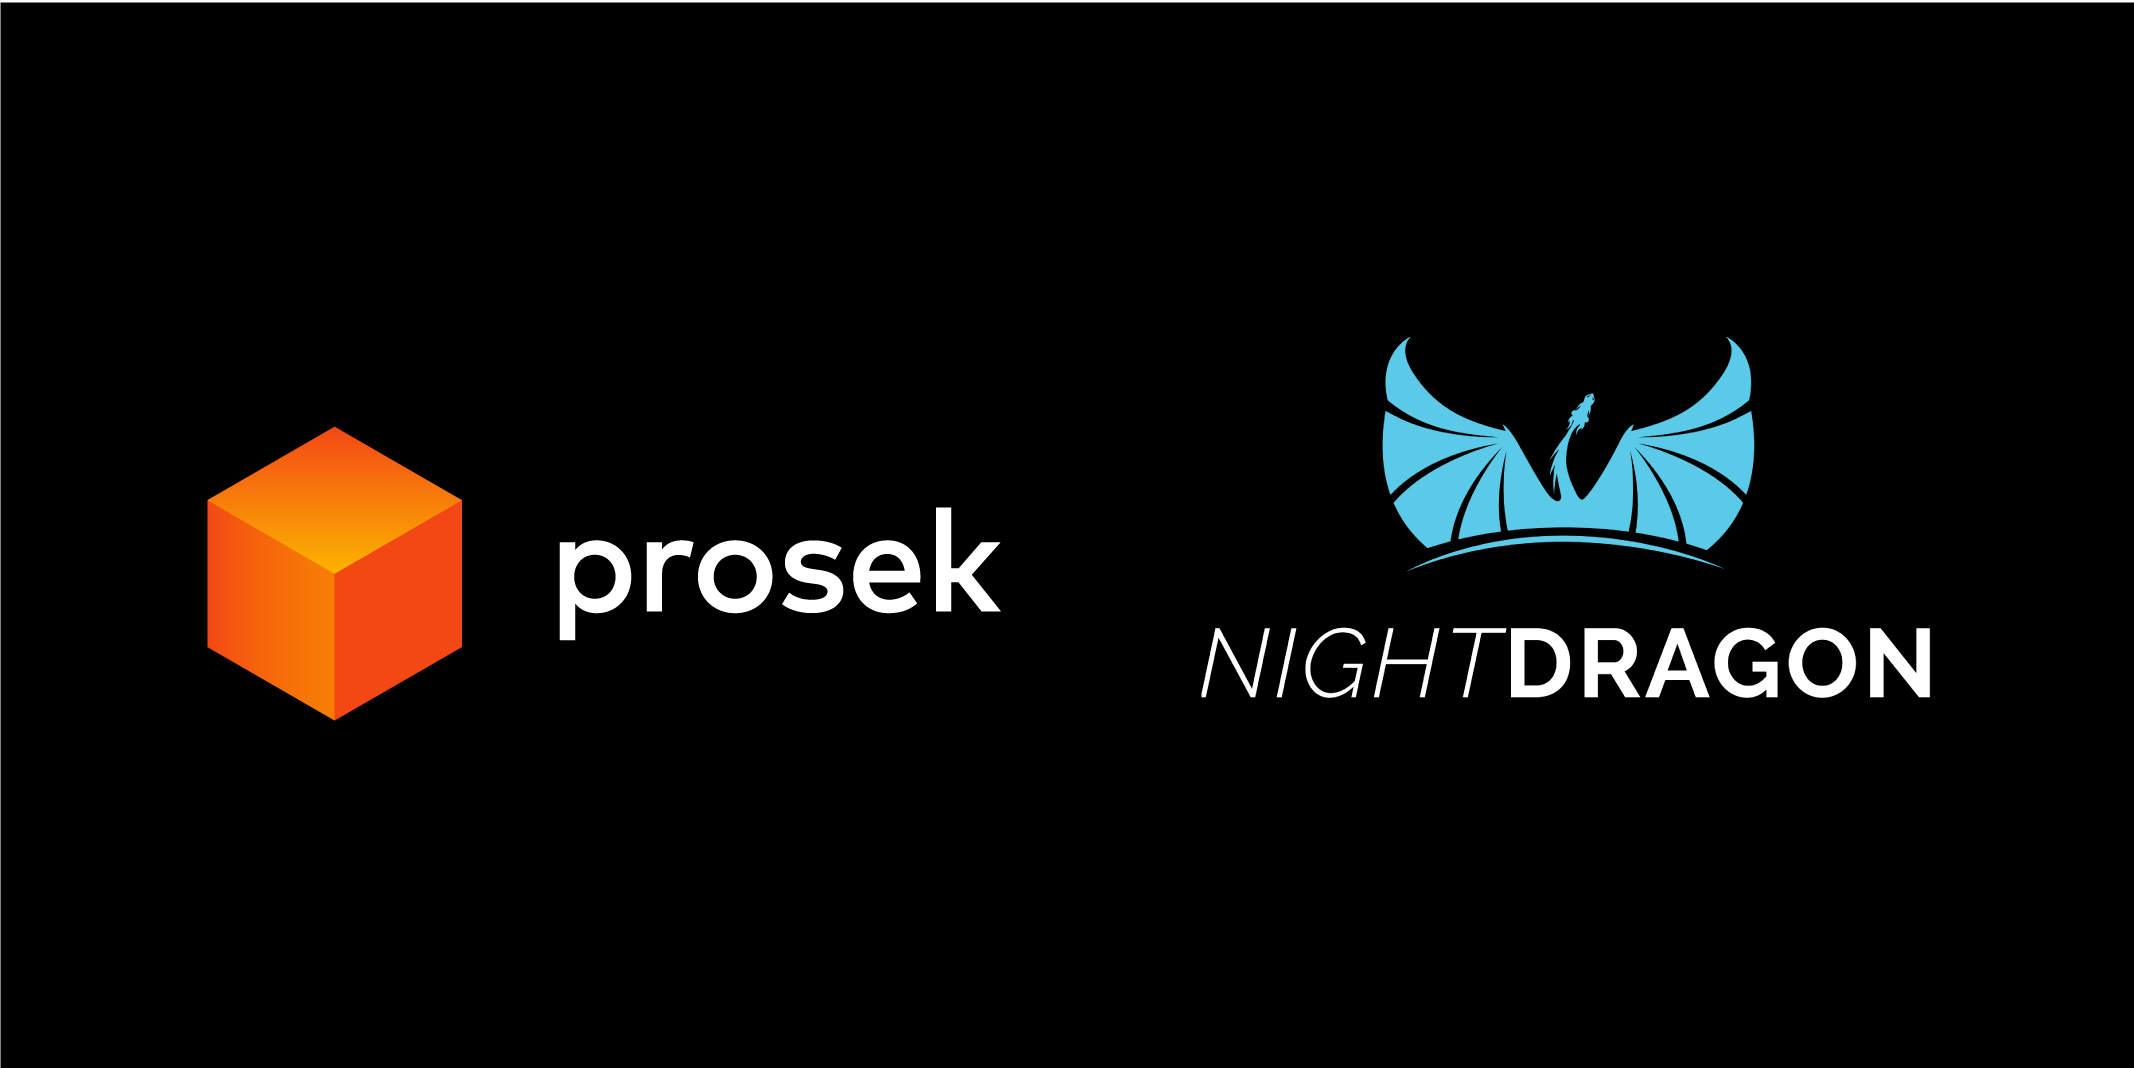 Prosek and NightDragon